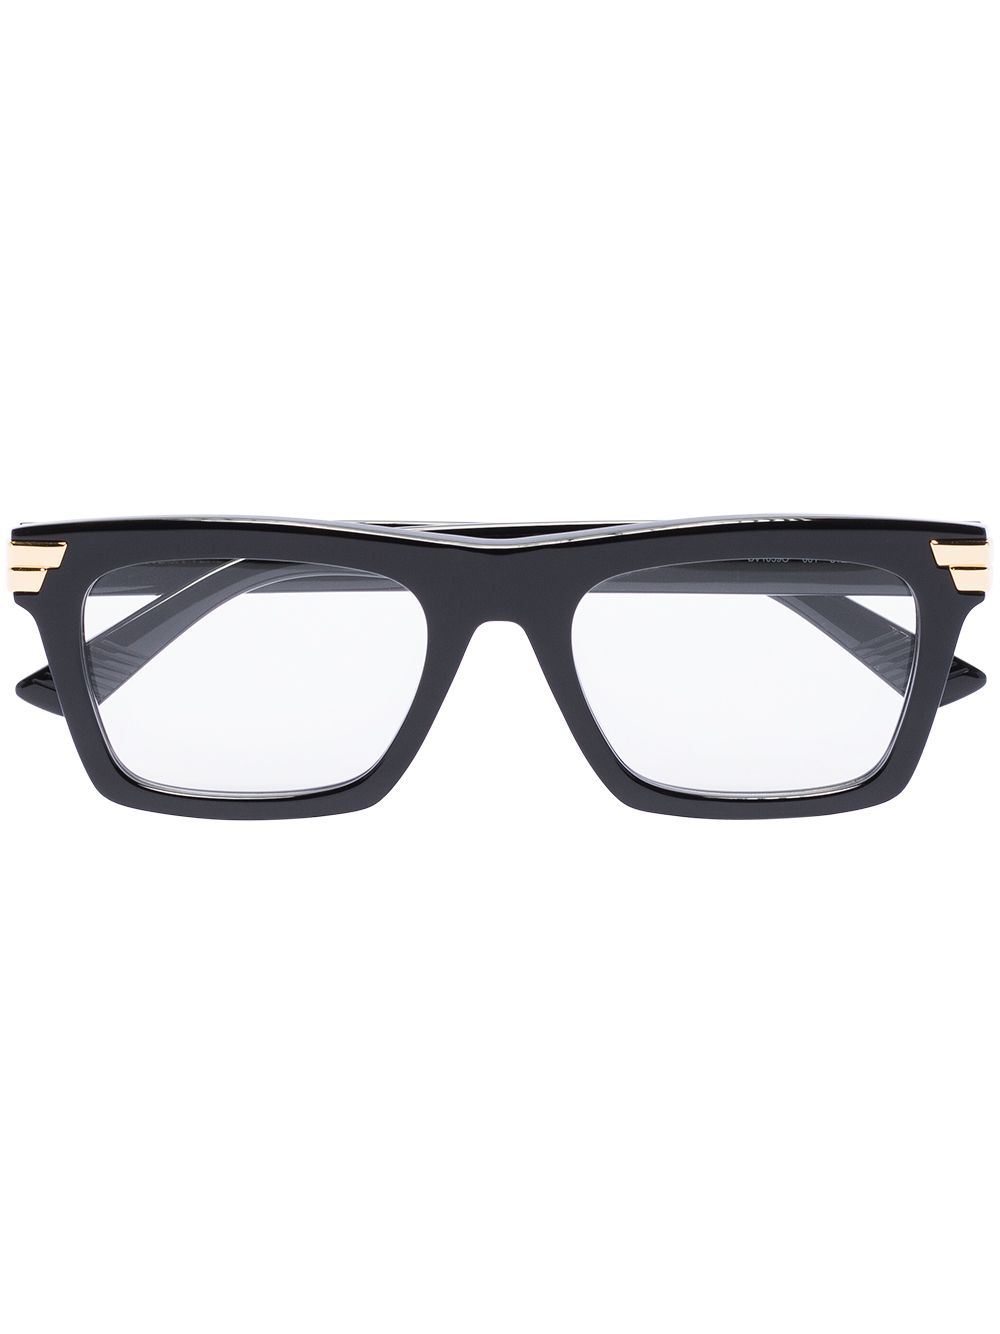 фото Bottega veneta eyewear очки в прямоугольной оправе